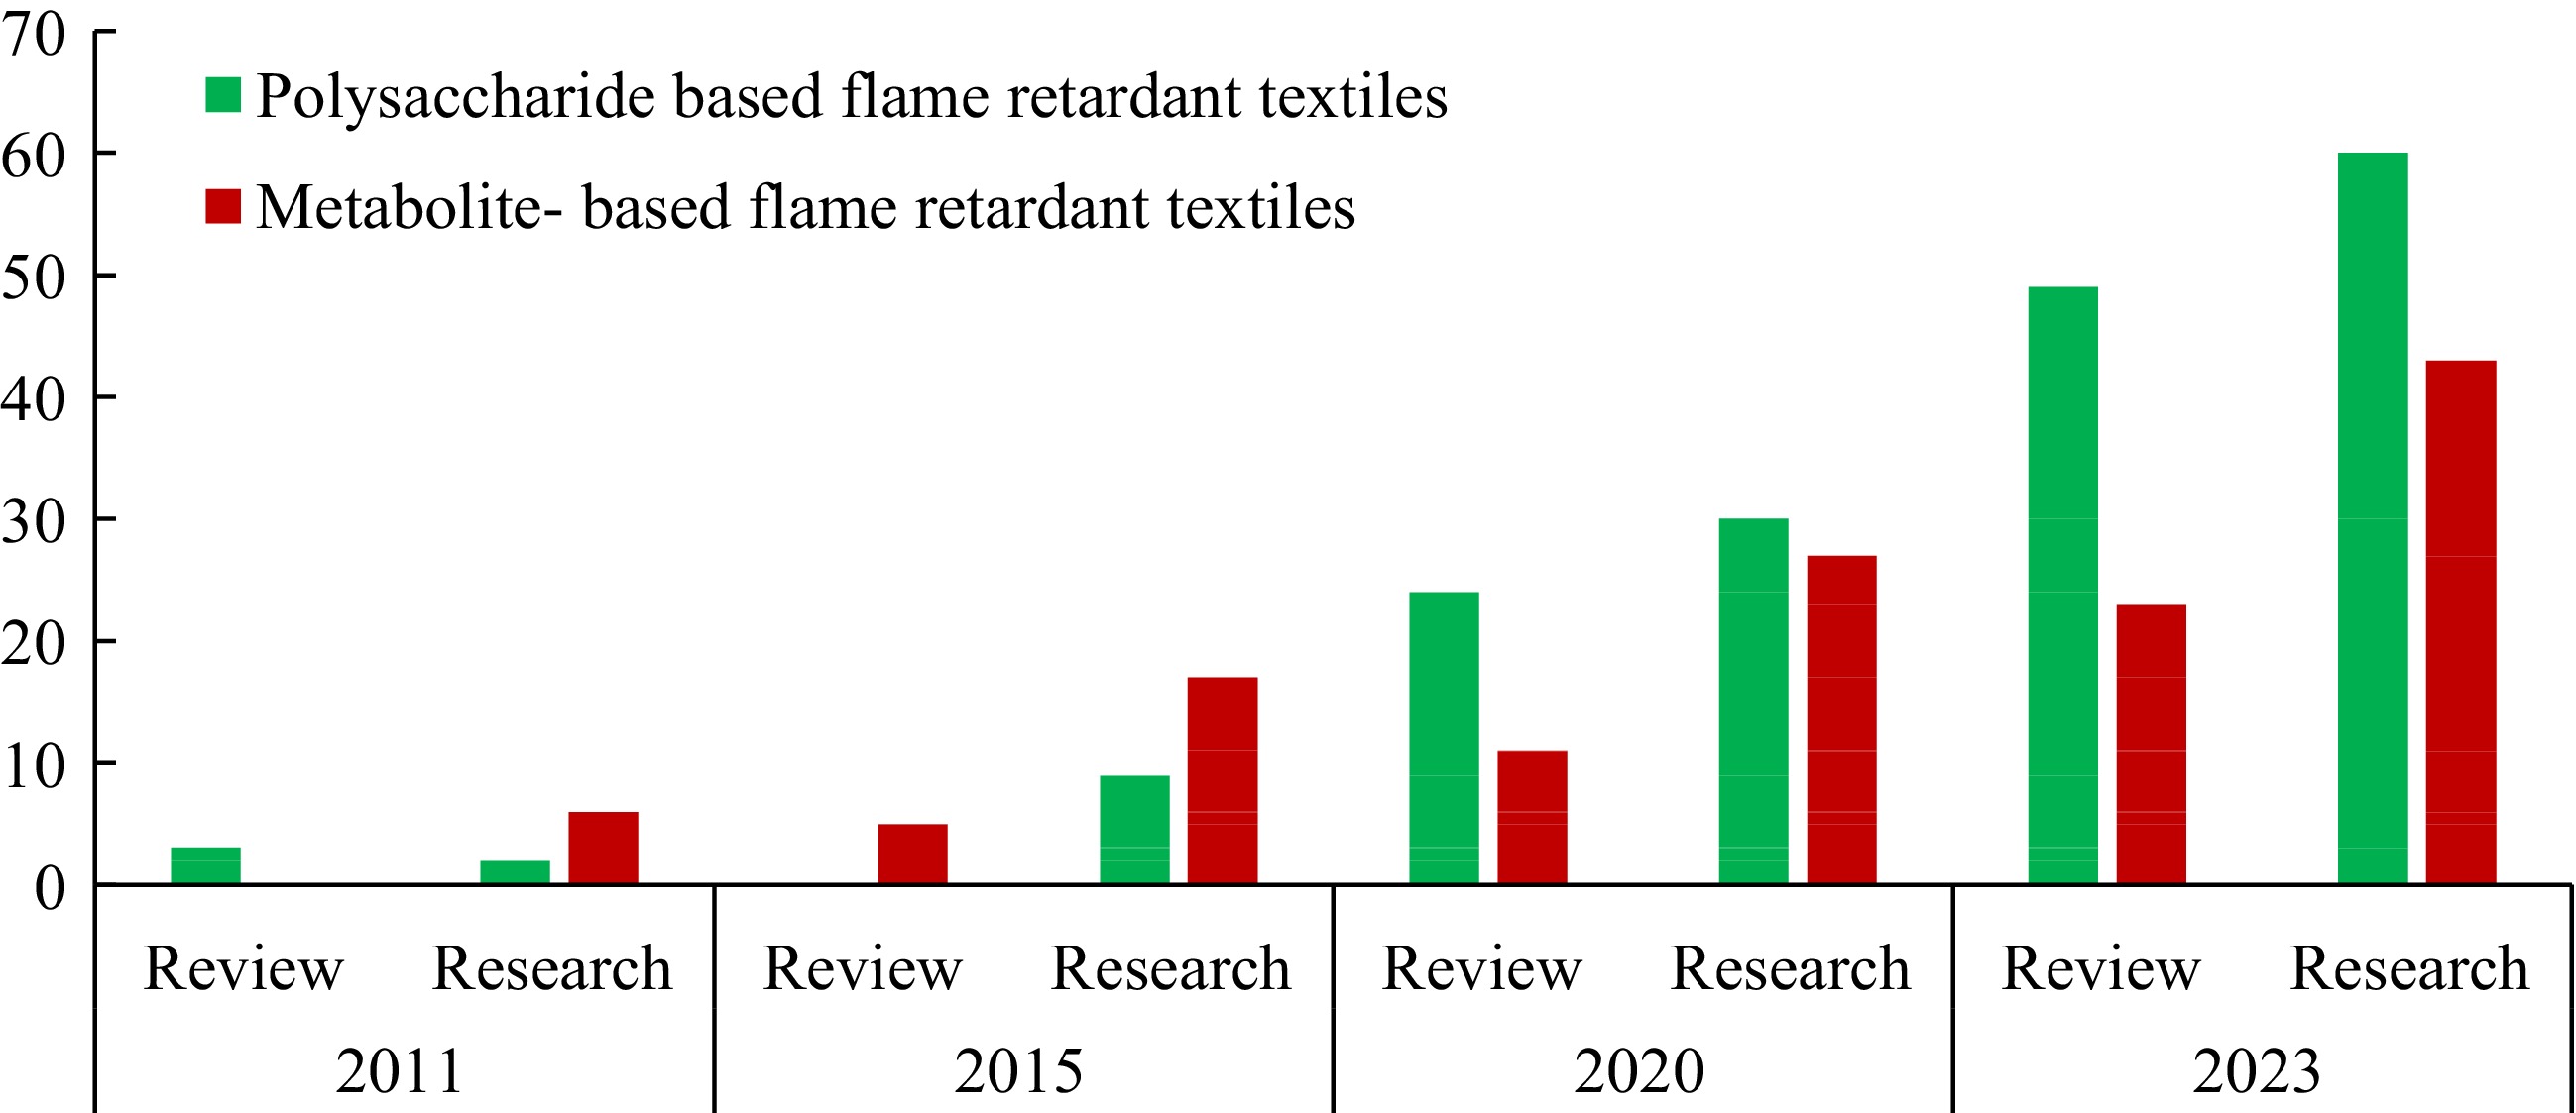 Flame retardant textiles